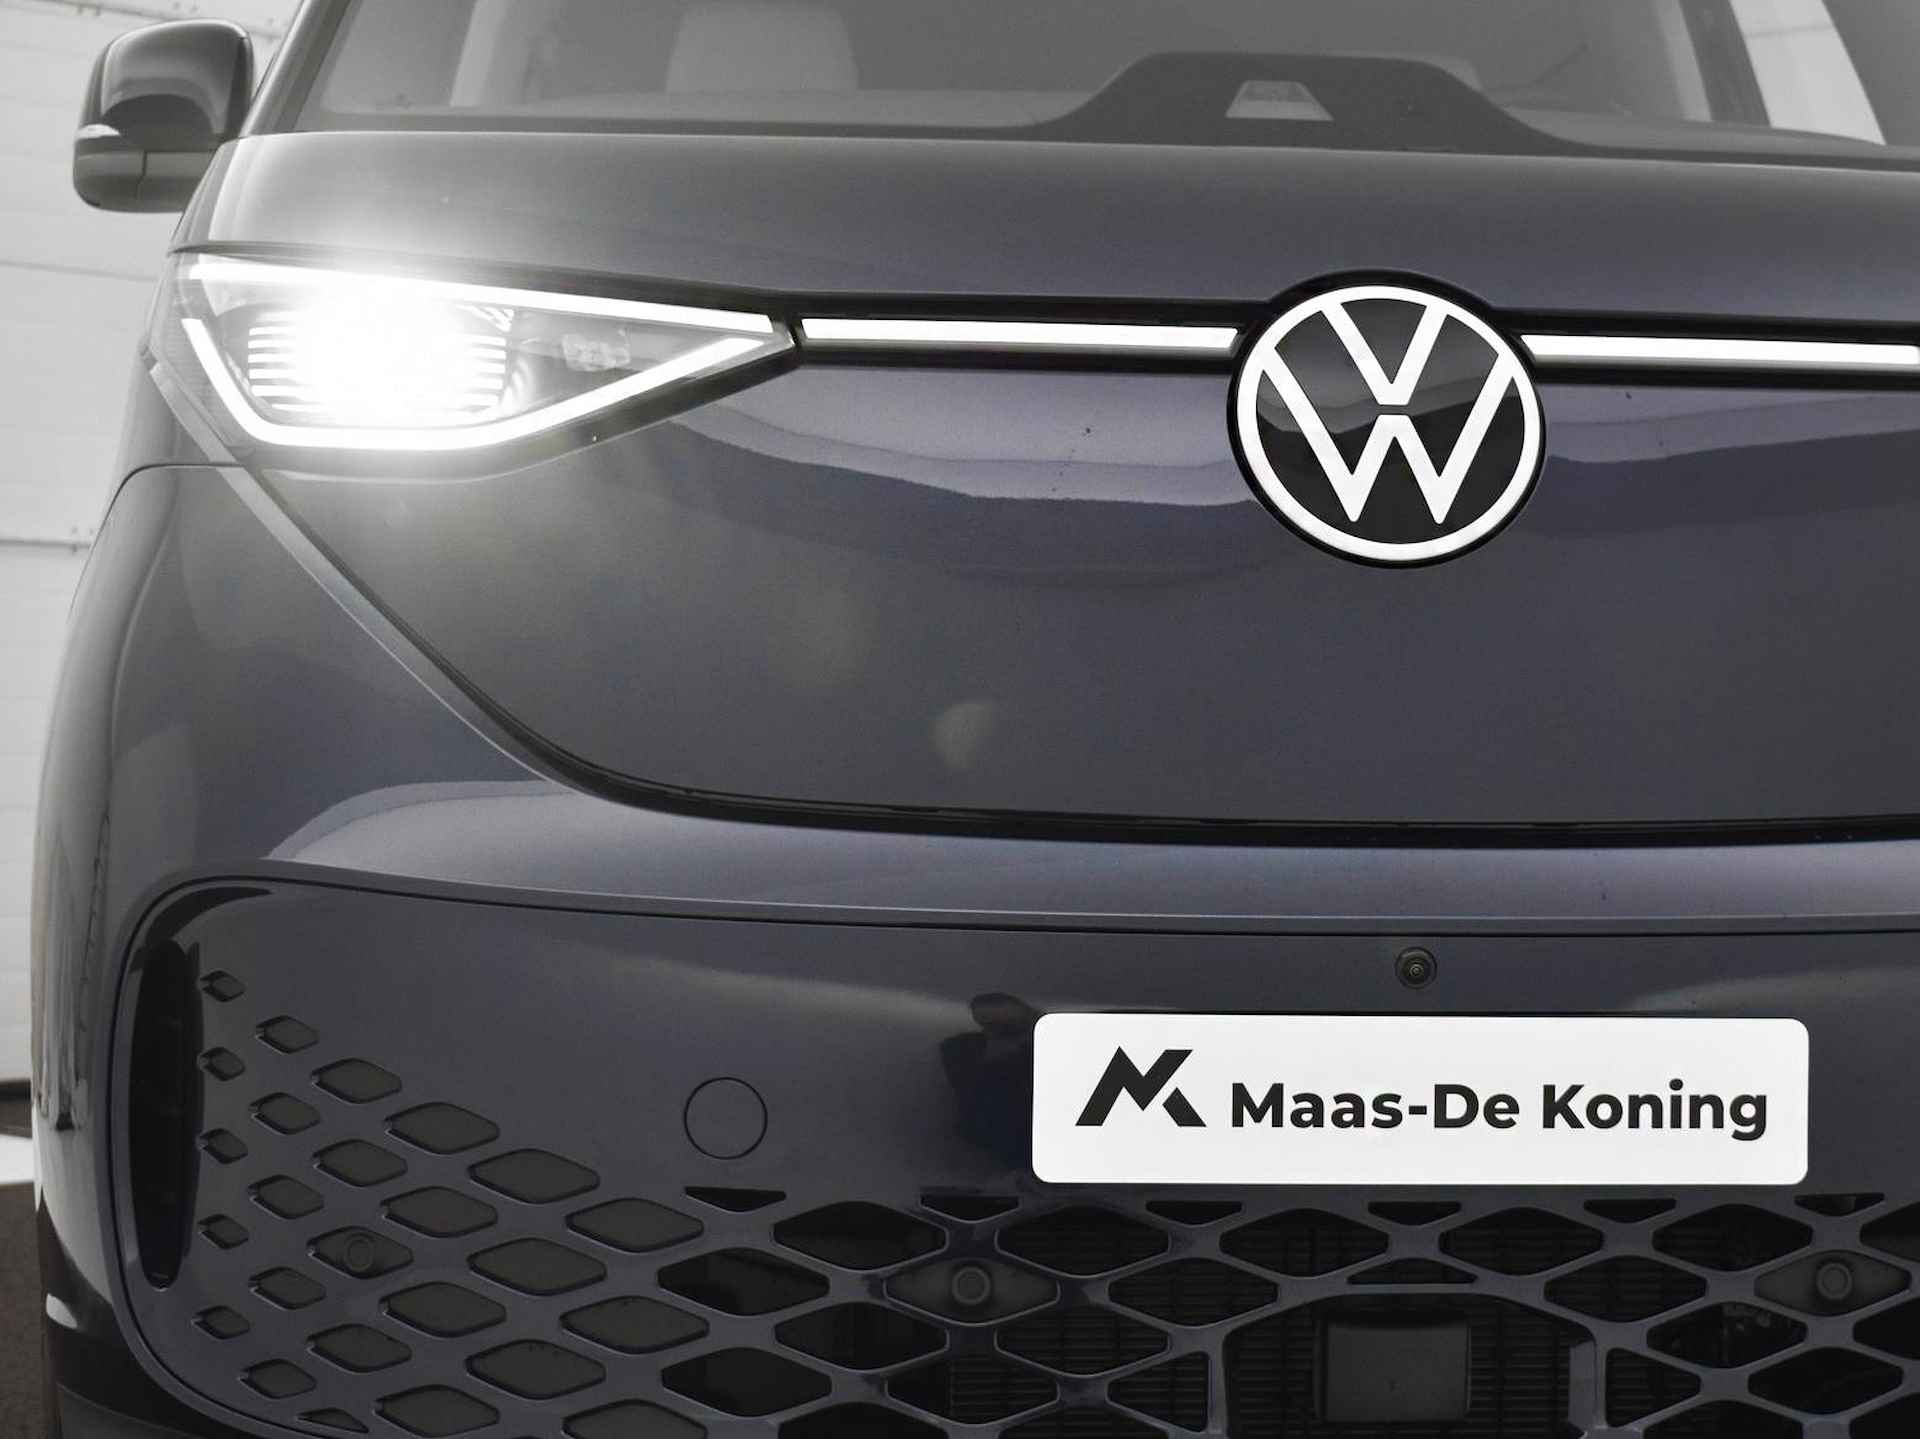 Volkswagen ID. Buzz pro advantage Elektromotor 150 kW / 204 pk electr. aandrijving · Assistance pakket · Design pakket · multimedia pakket plus · open & close pakket plus · trekhaak · MEGA Sale - 40/40